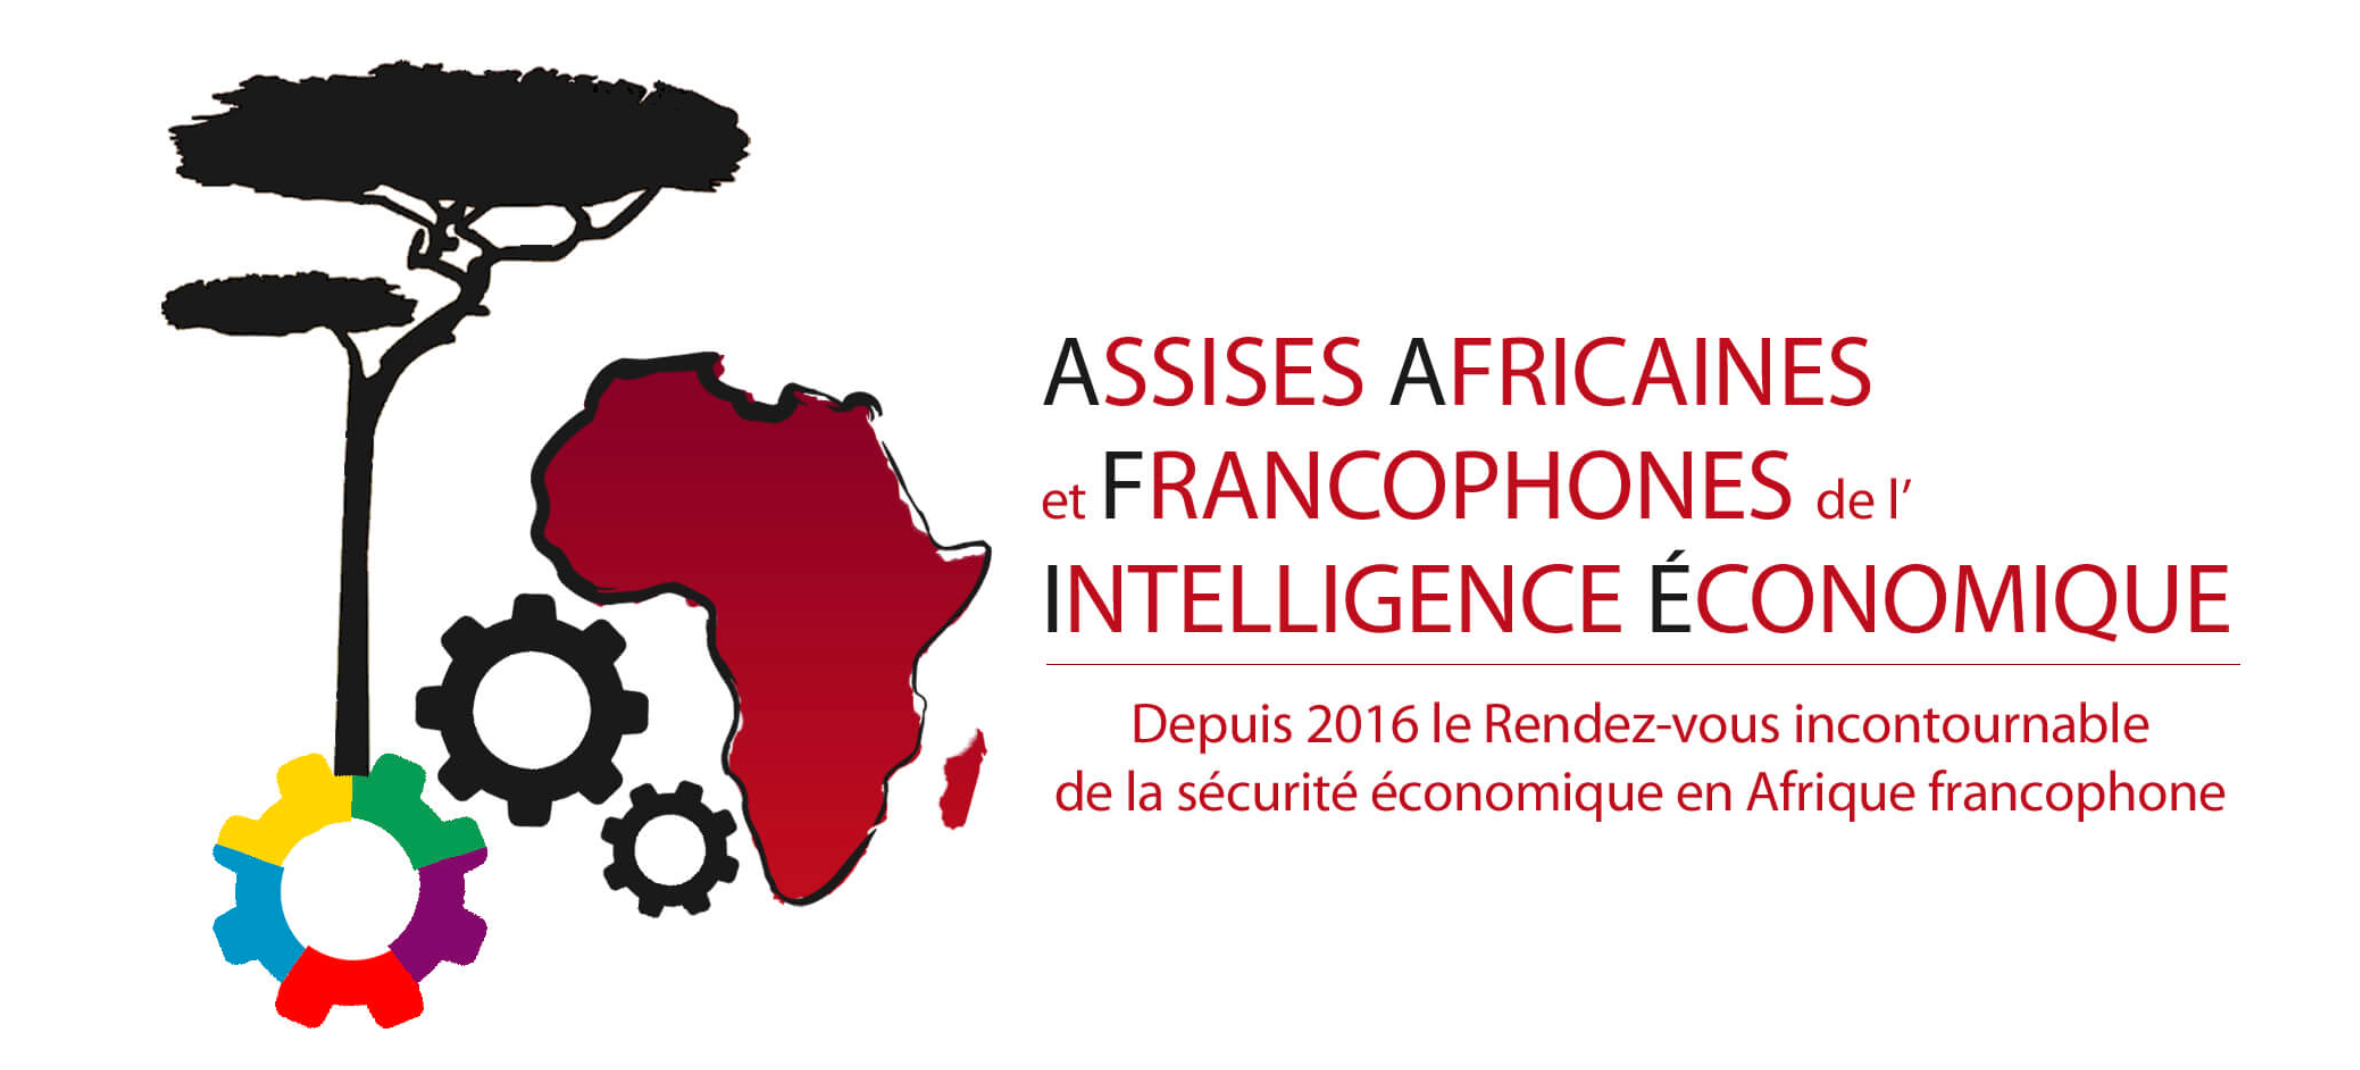 Affectio Mutandi intervient aux Assises Africaines et Francophones de l’Intelligence Économique !!!